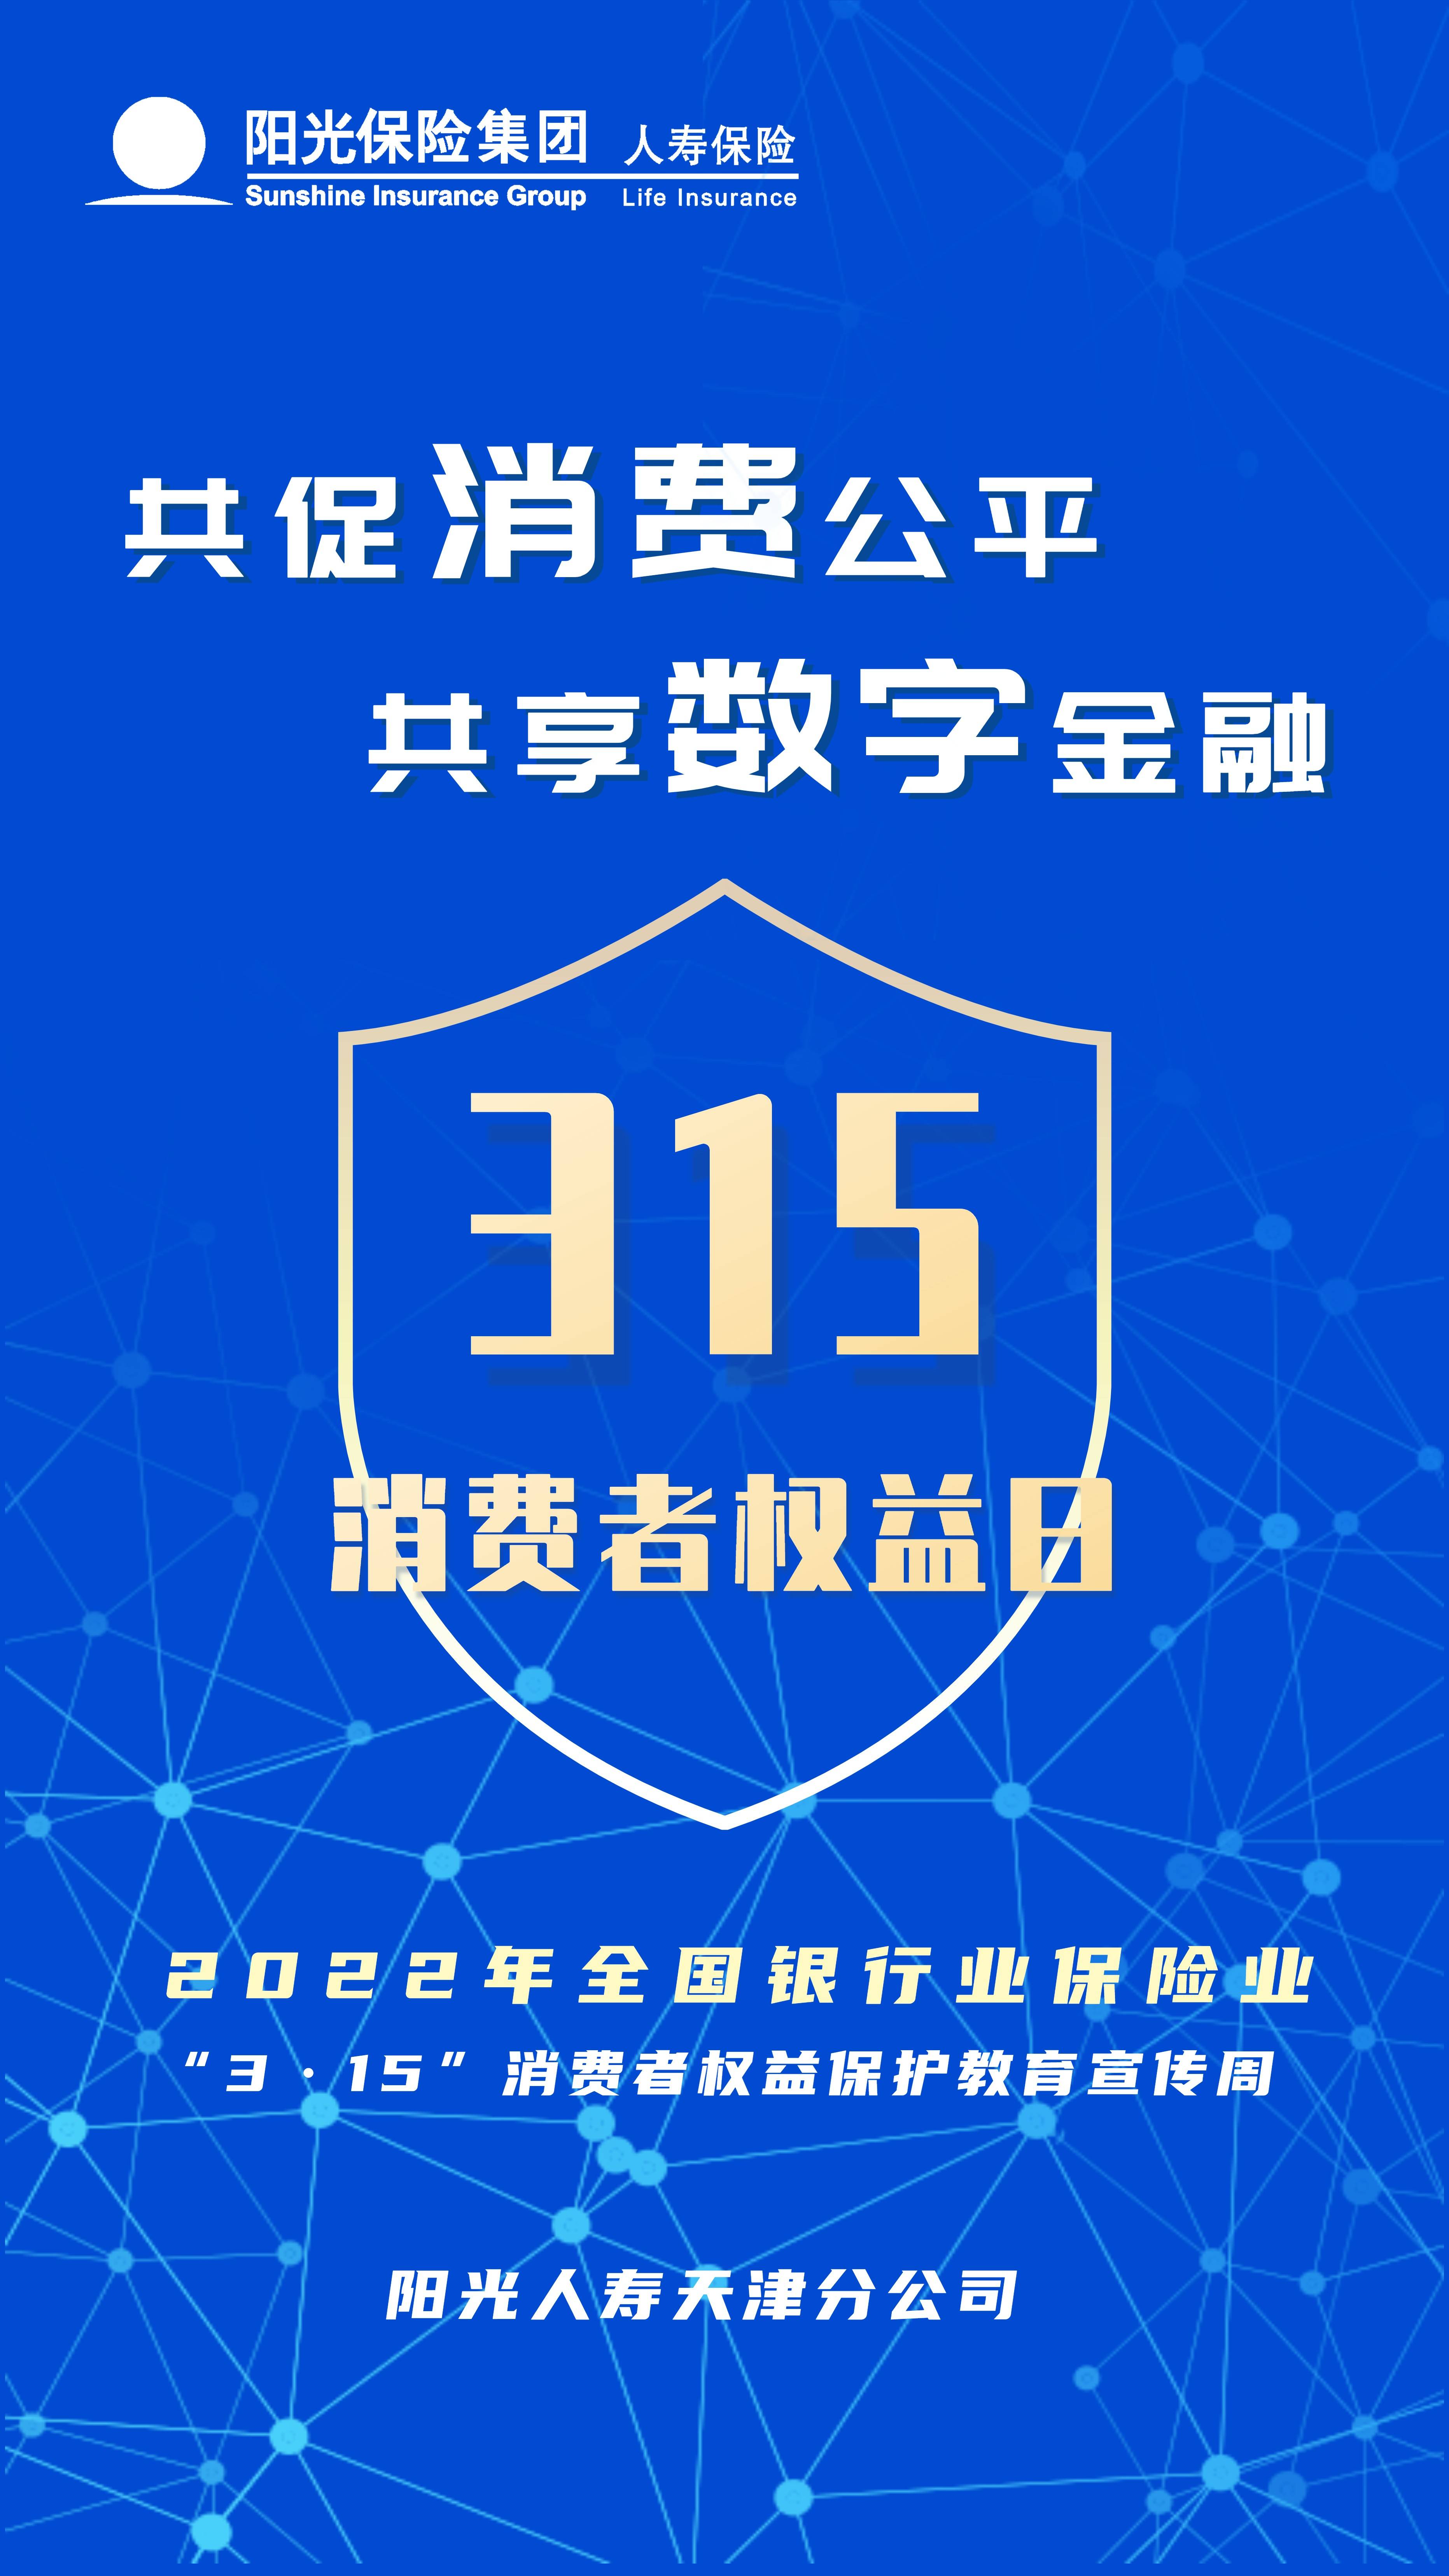 阳光人寿天津分公司启动315消费者权益保护教育宣传周活动